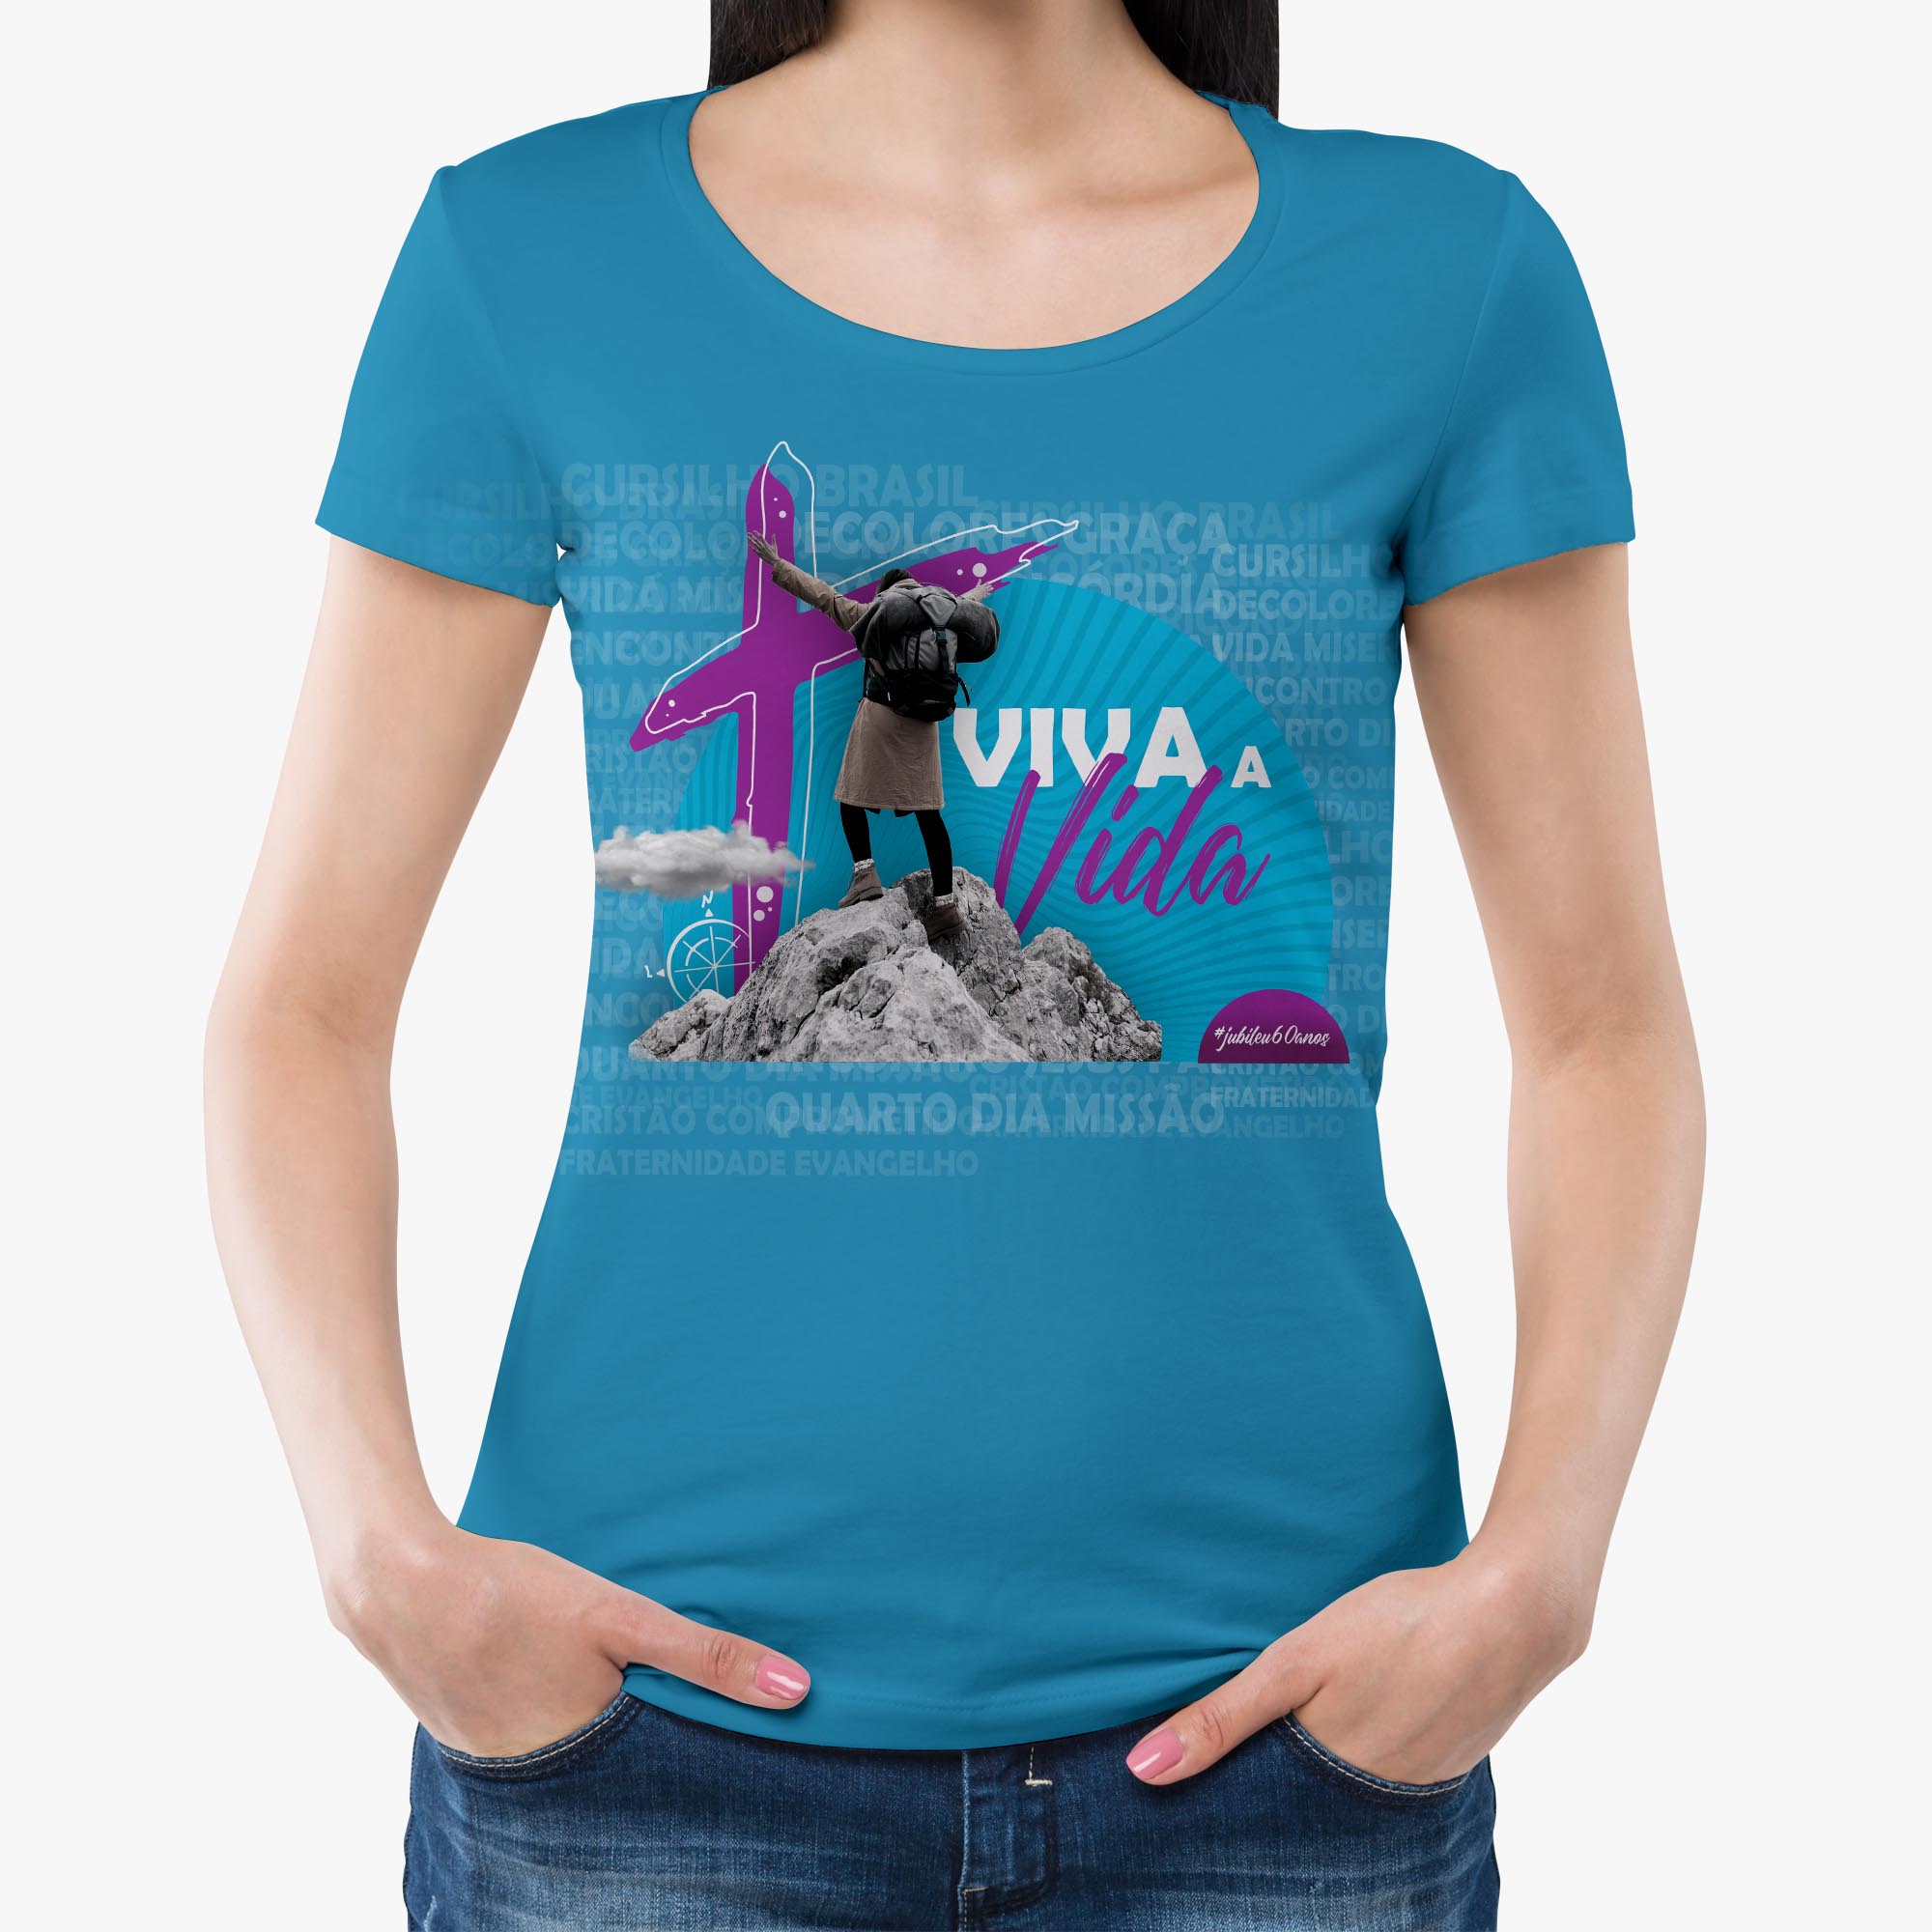 Camiseta Feminina BabyLook - Viva a vida  - Cursilho